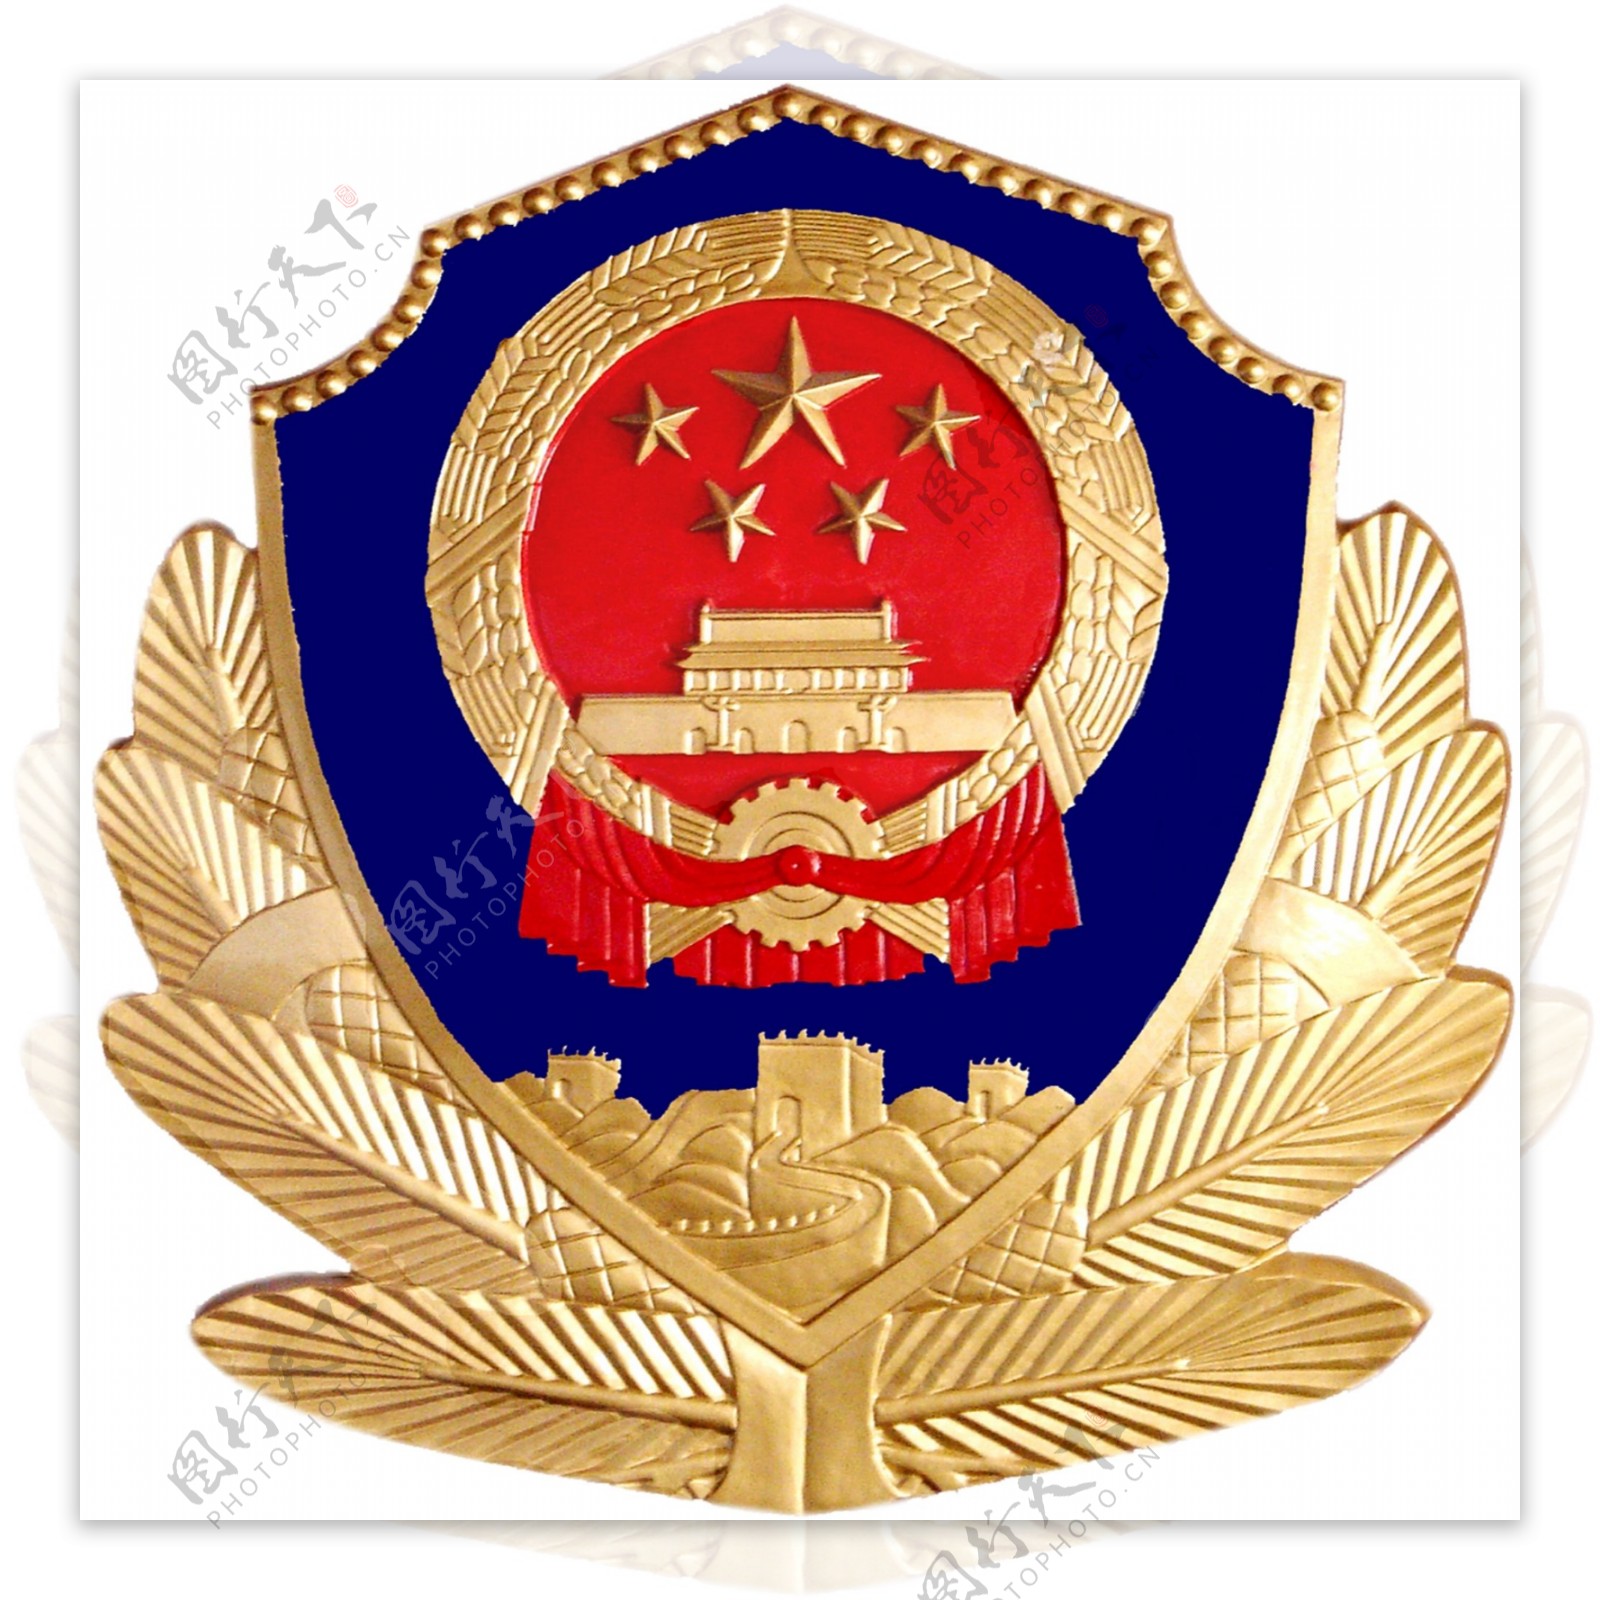 警徽公安标志图片